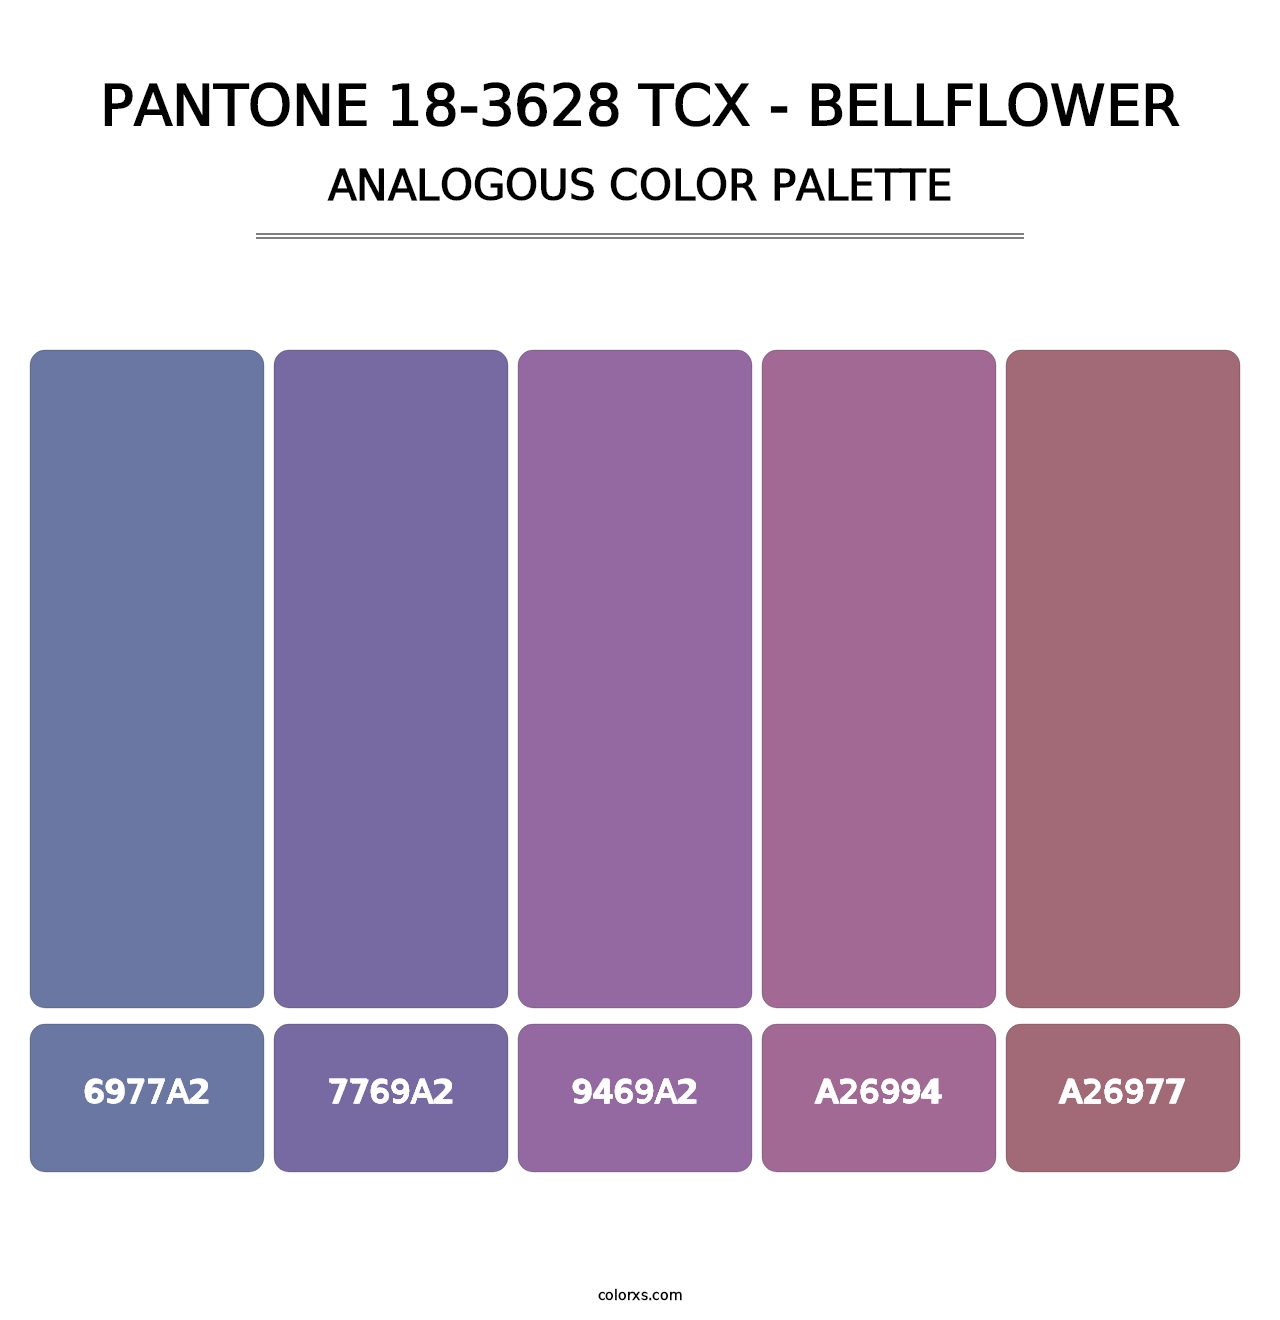 PANTONE 18-3628 TCX - Bellflower - Analogous Color Palette